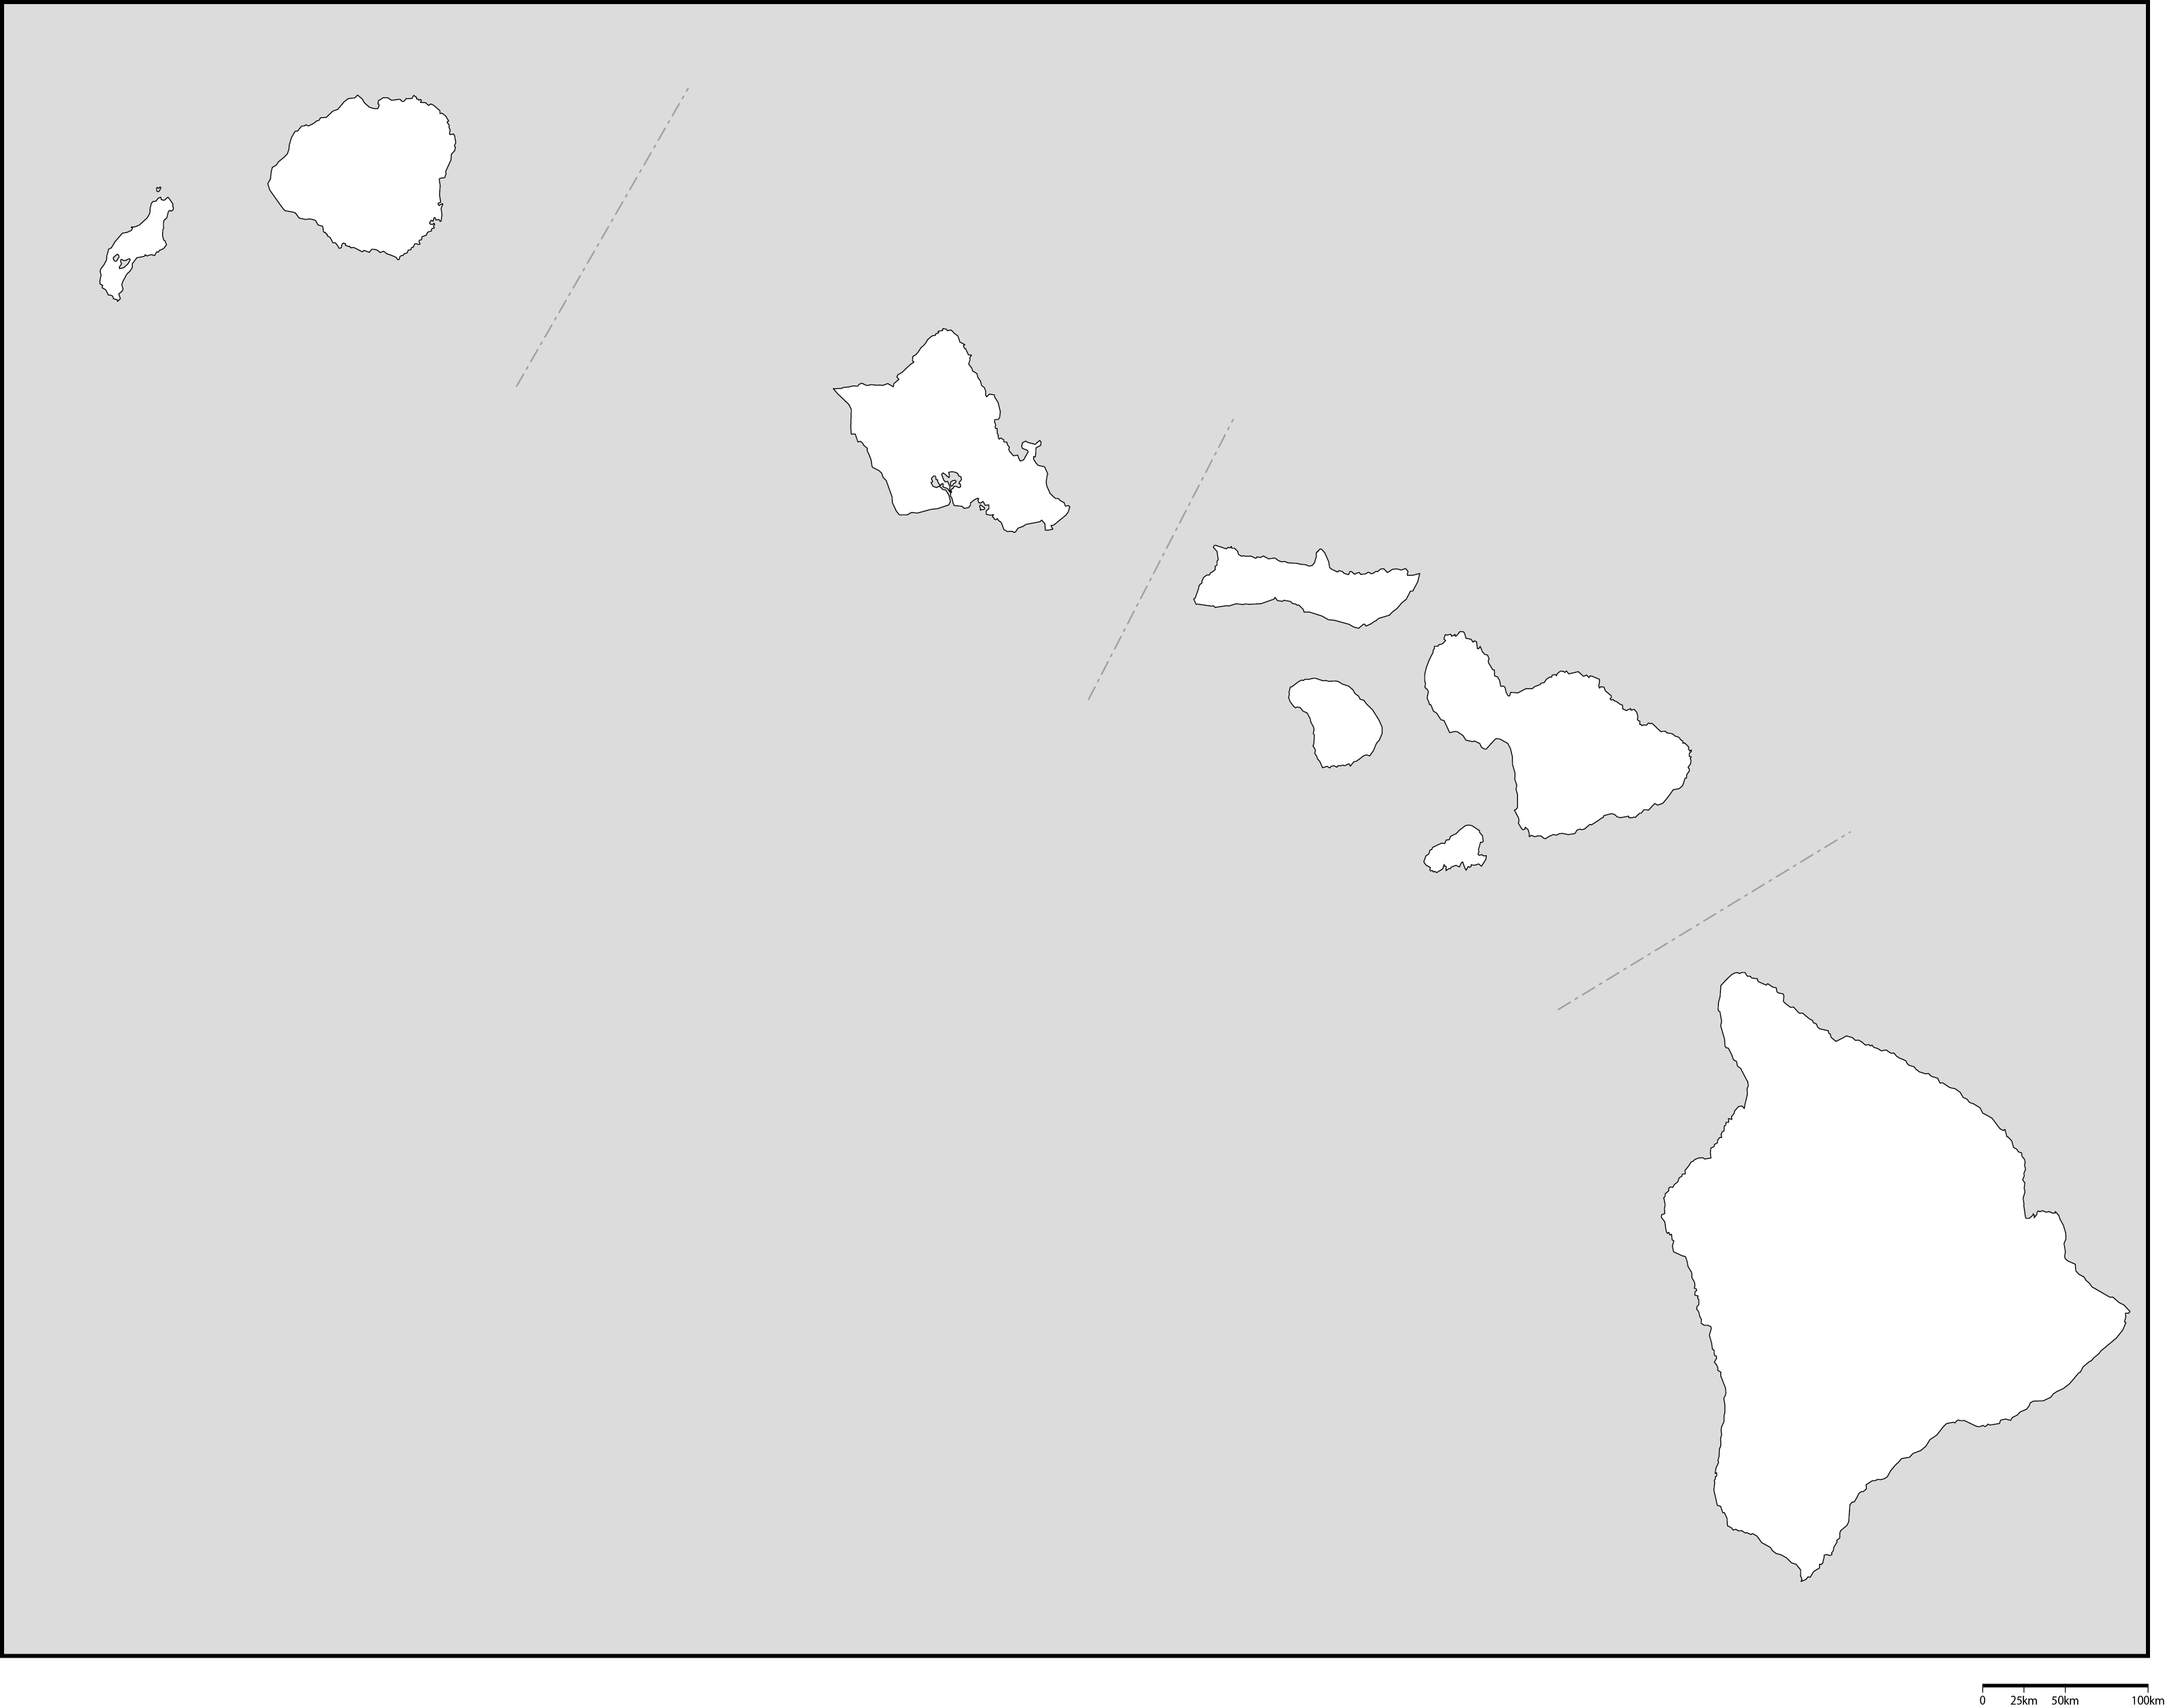 ハワイ州郡分け白地図フリーデータの画像